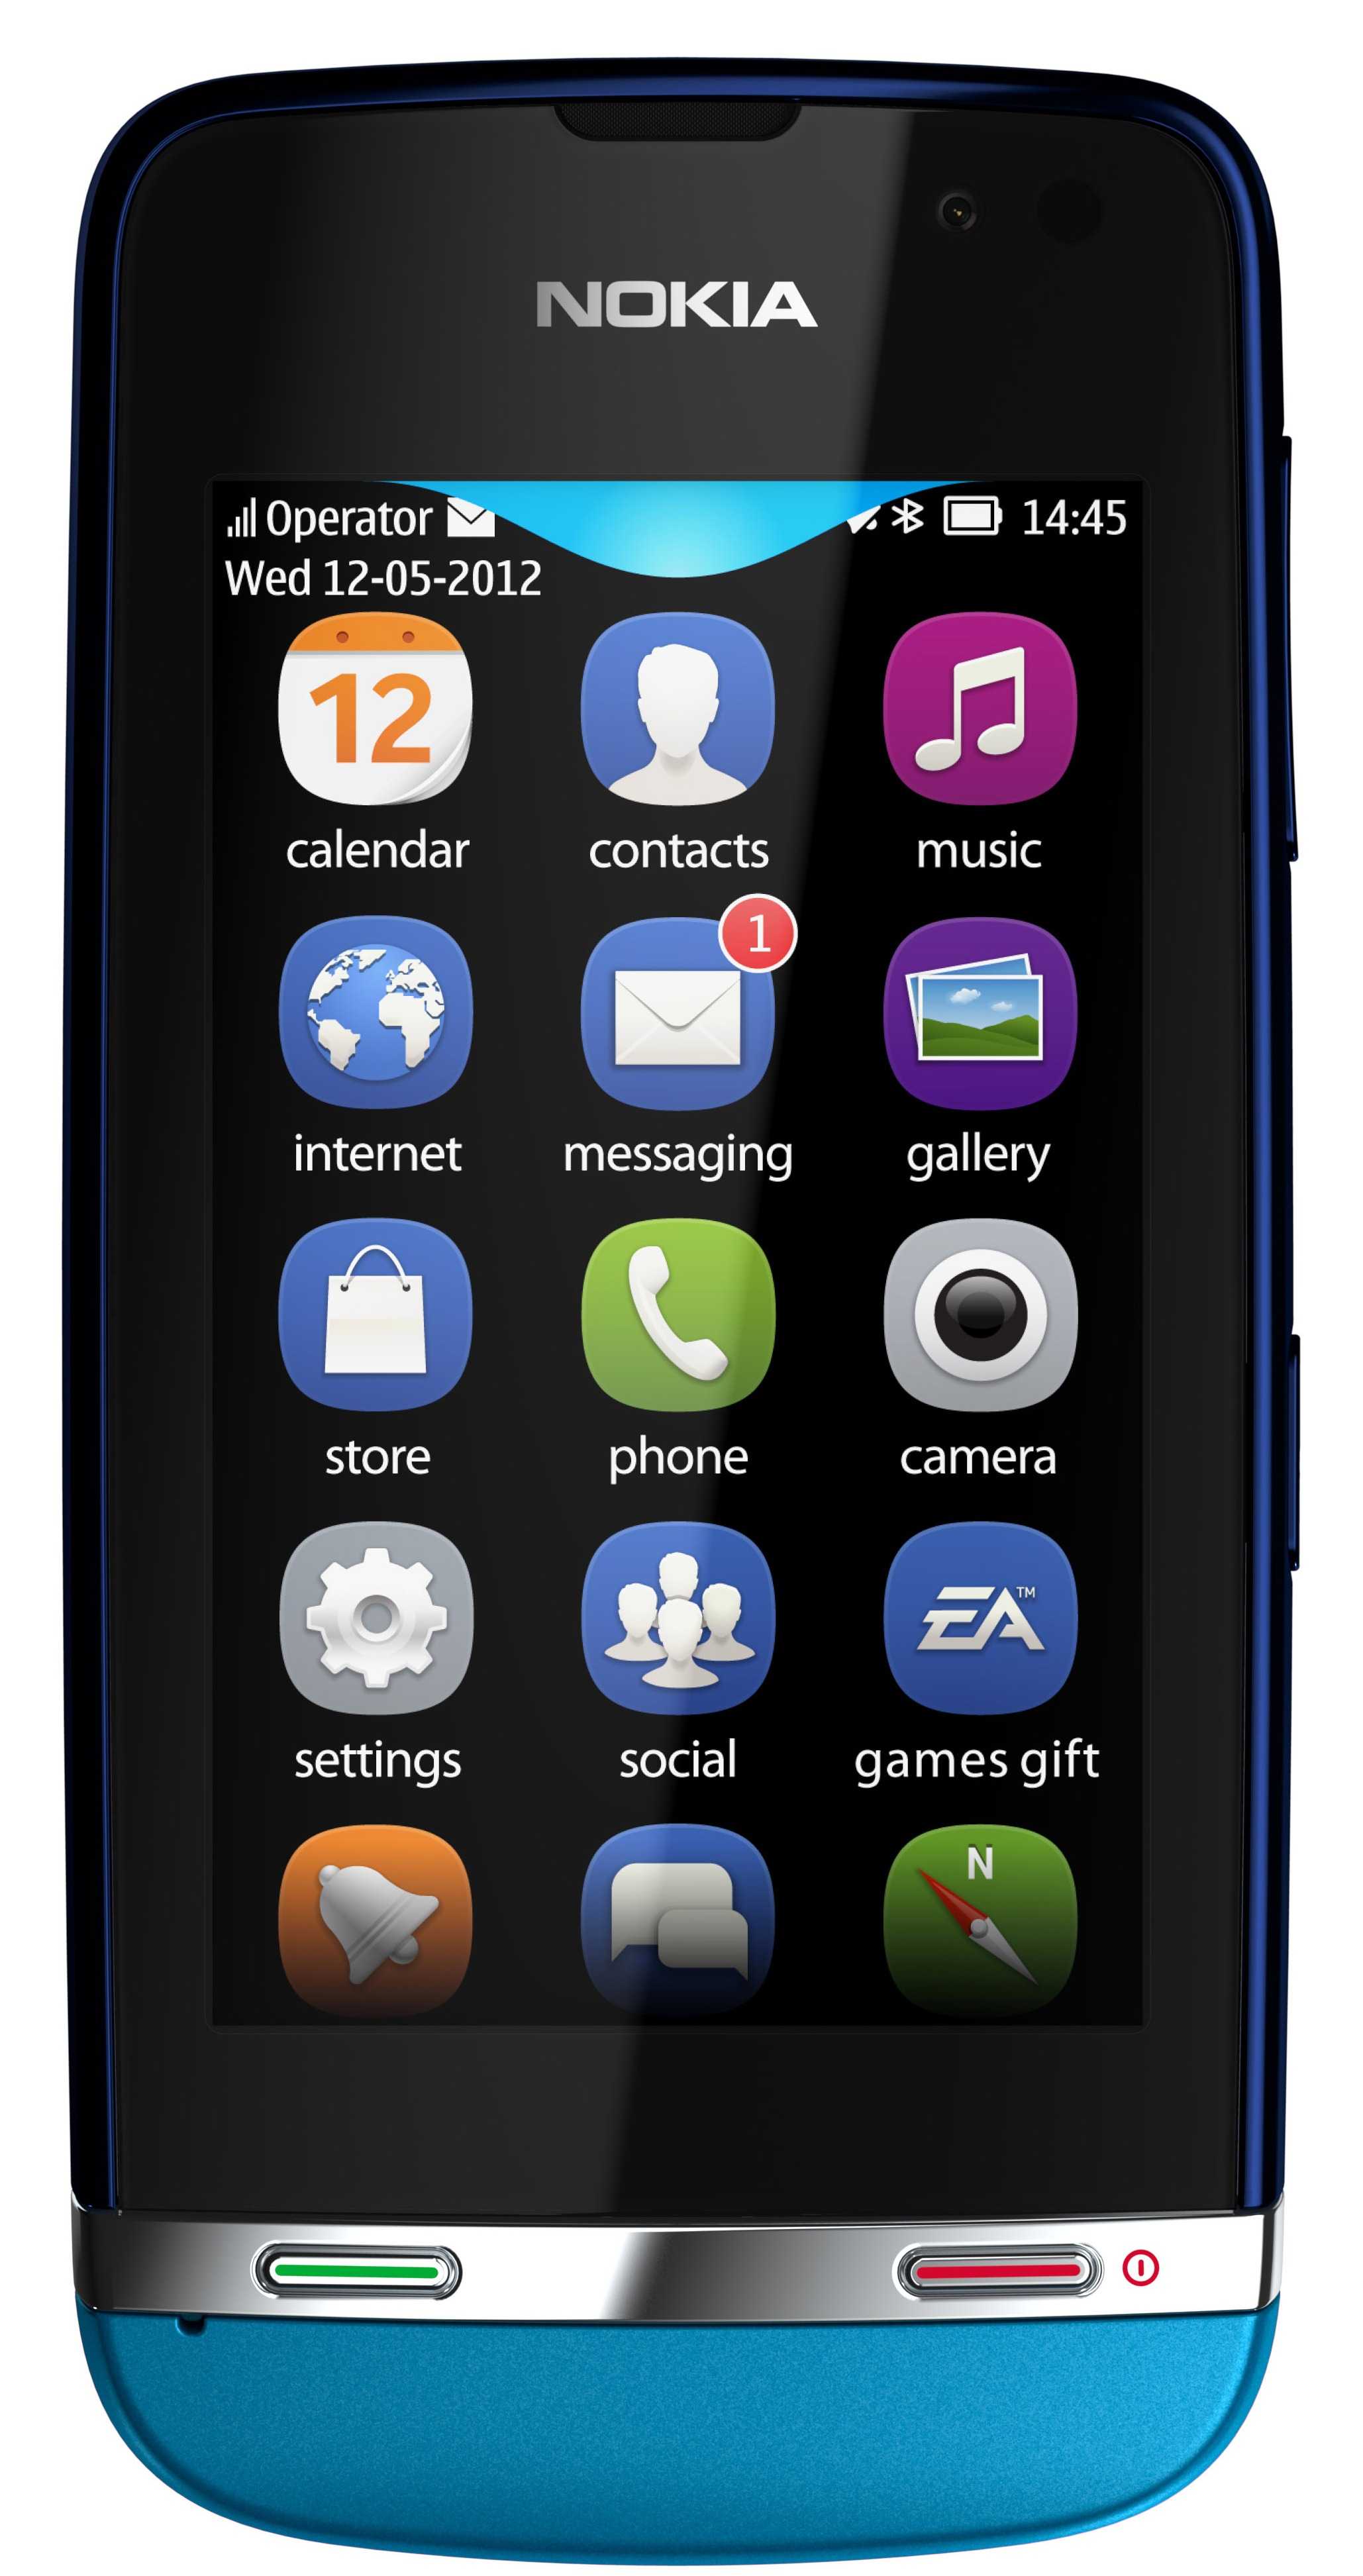 Nokia asha 311 (нокиа, нокия). цена, купить nokia asha 311. мобильный телефон nokia asha 311: обзор, отзывы, описание, продажа, характеристики, видео, фото | allnokia.in.ua